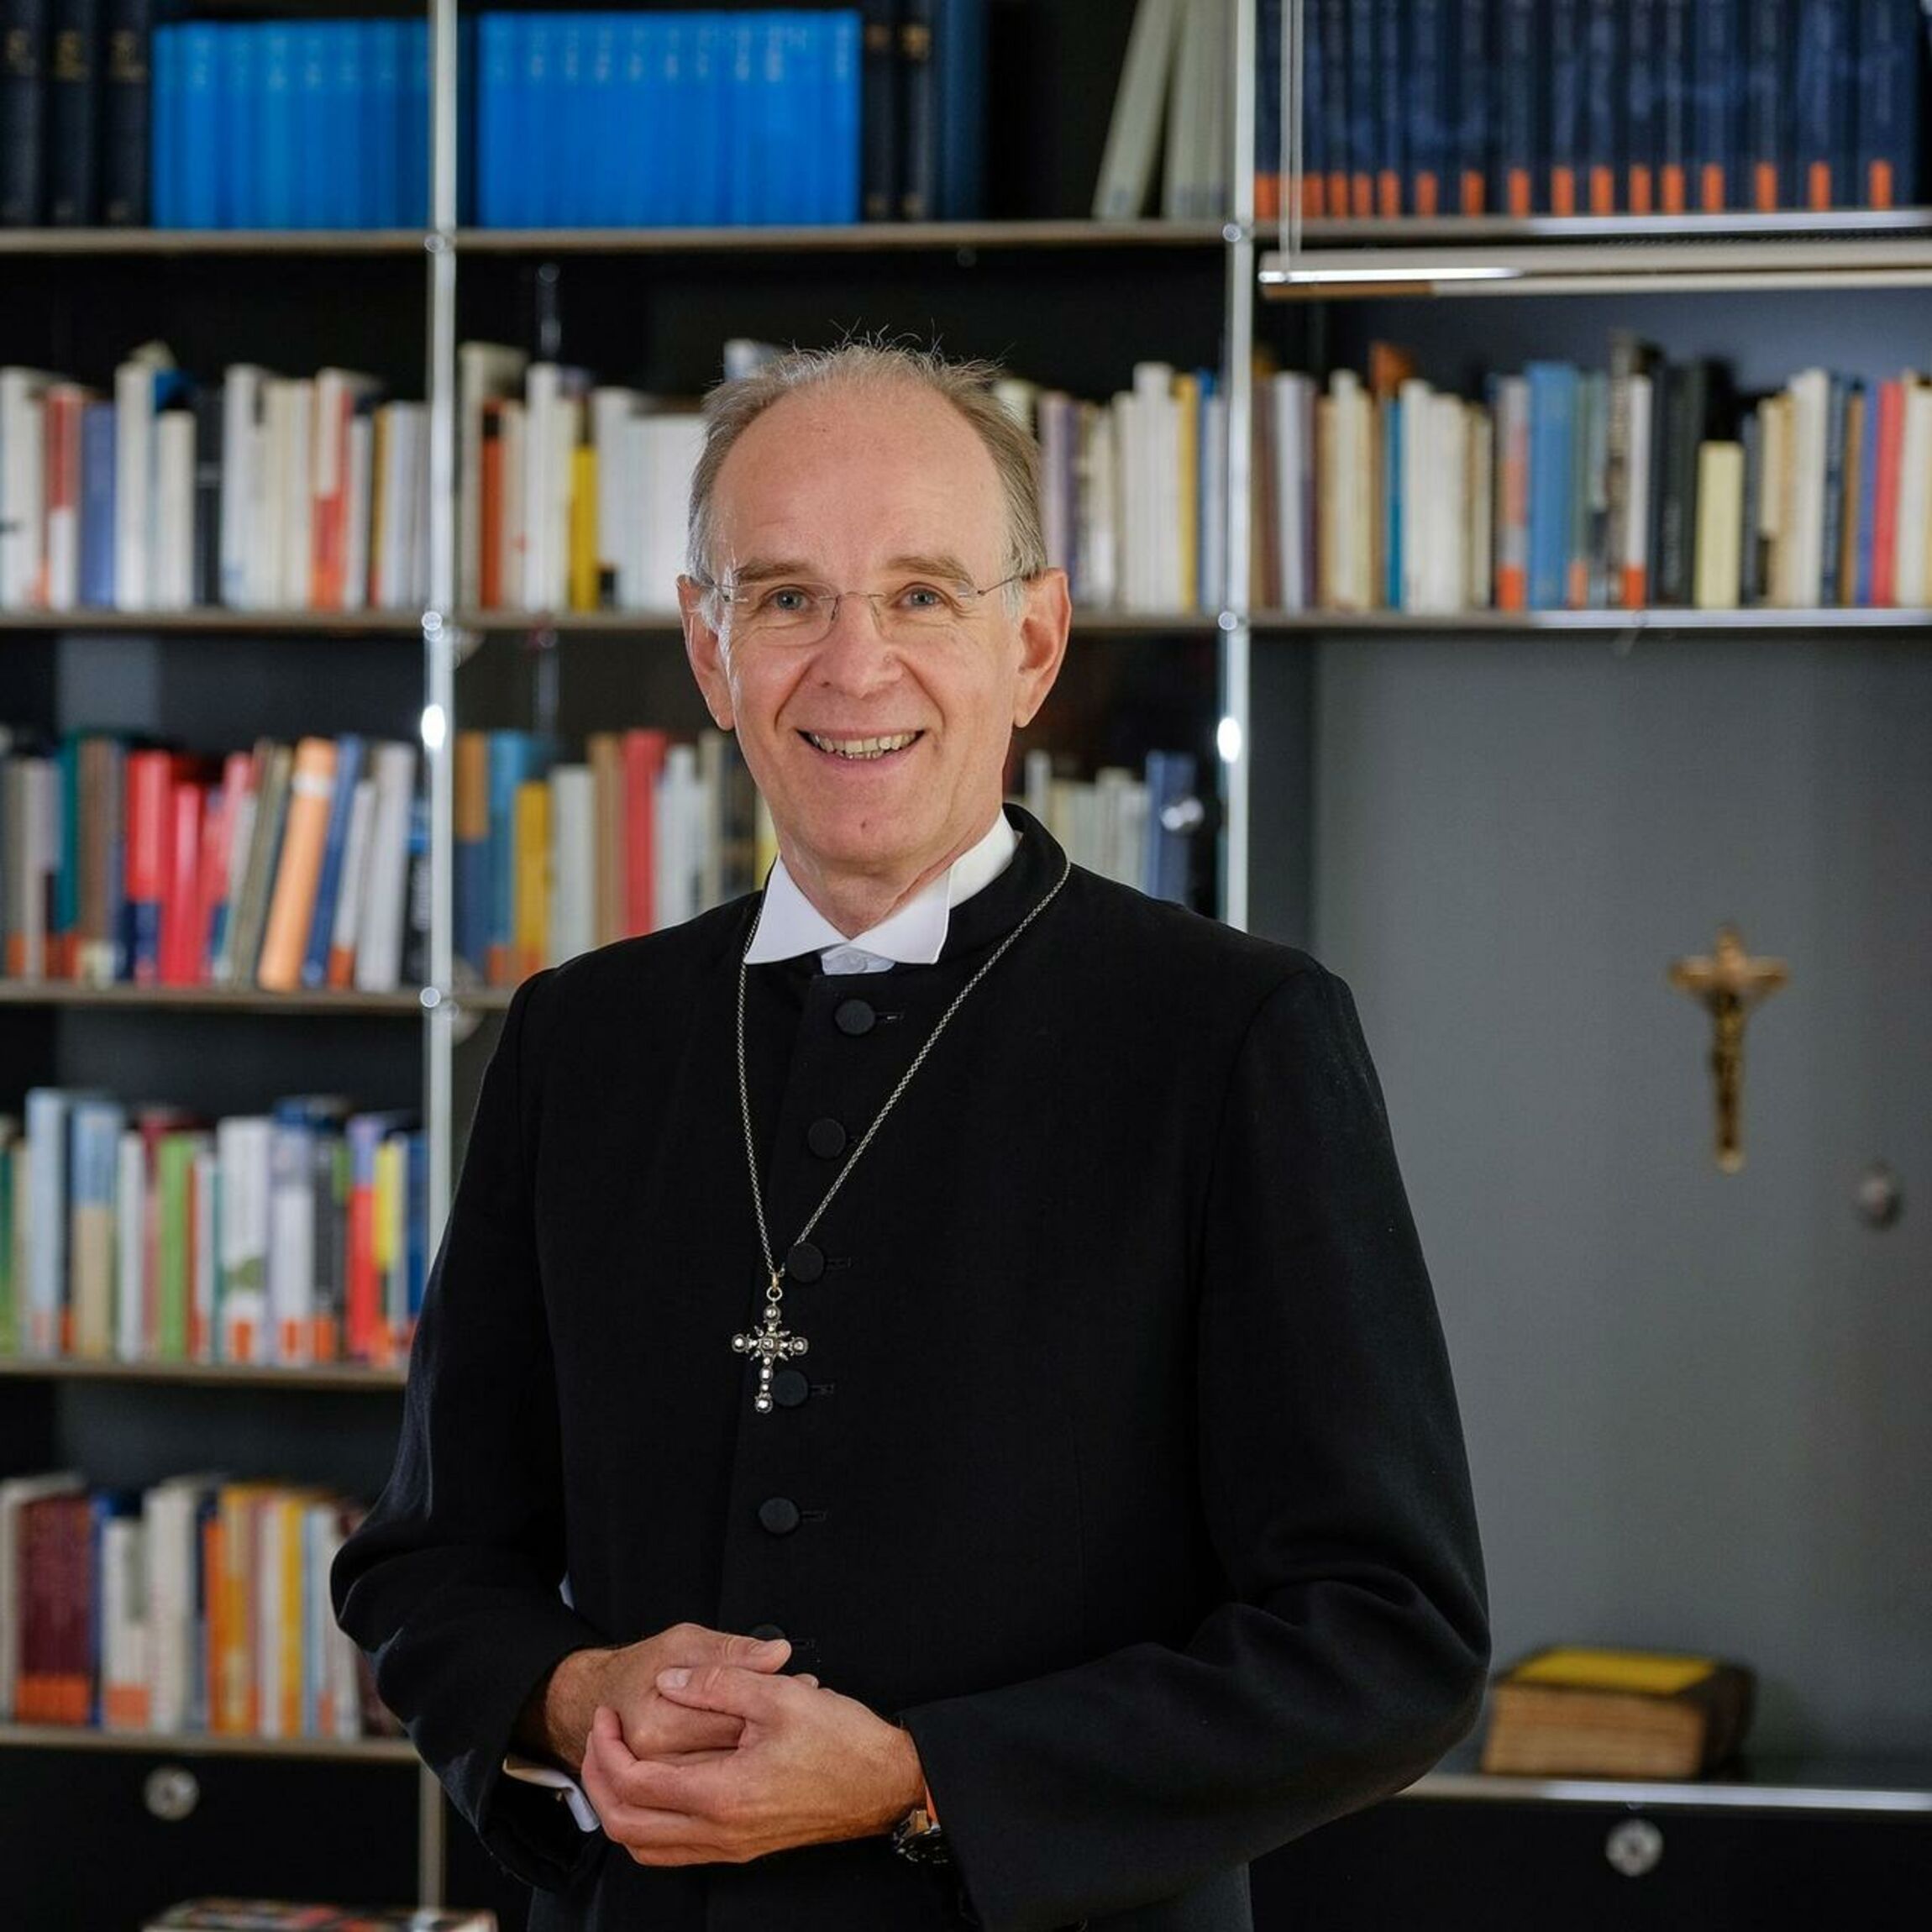 Landesbischof Ralf Meister, Abt des Klosters Loccum. Foto: Jens Schulze